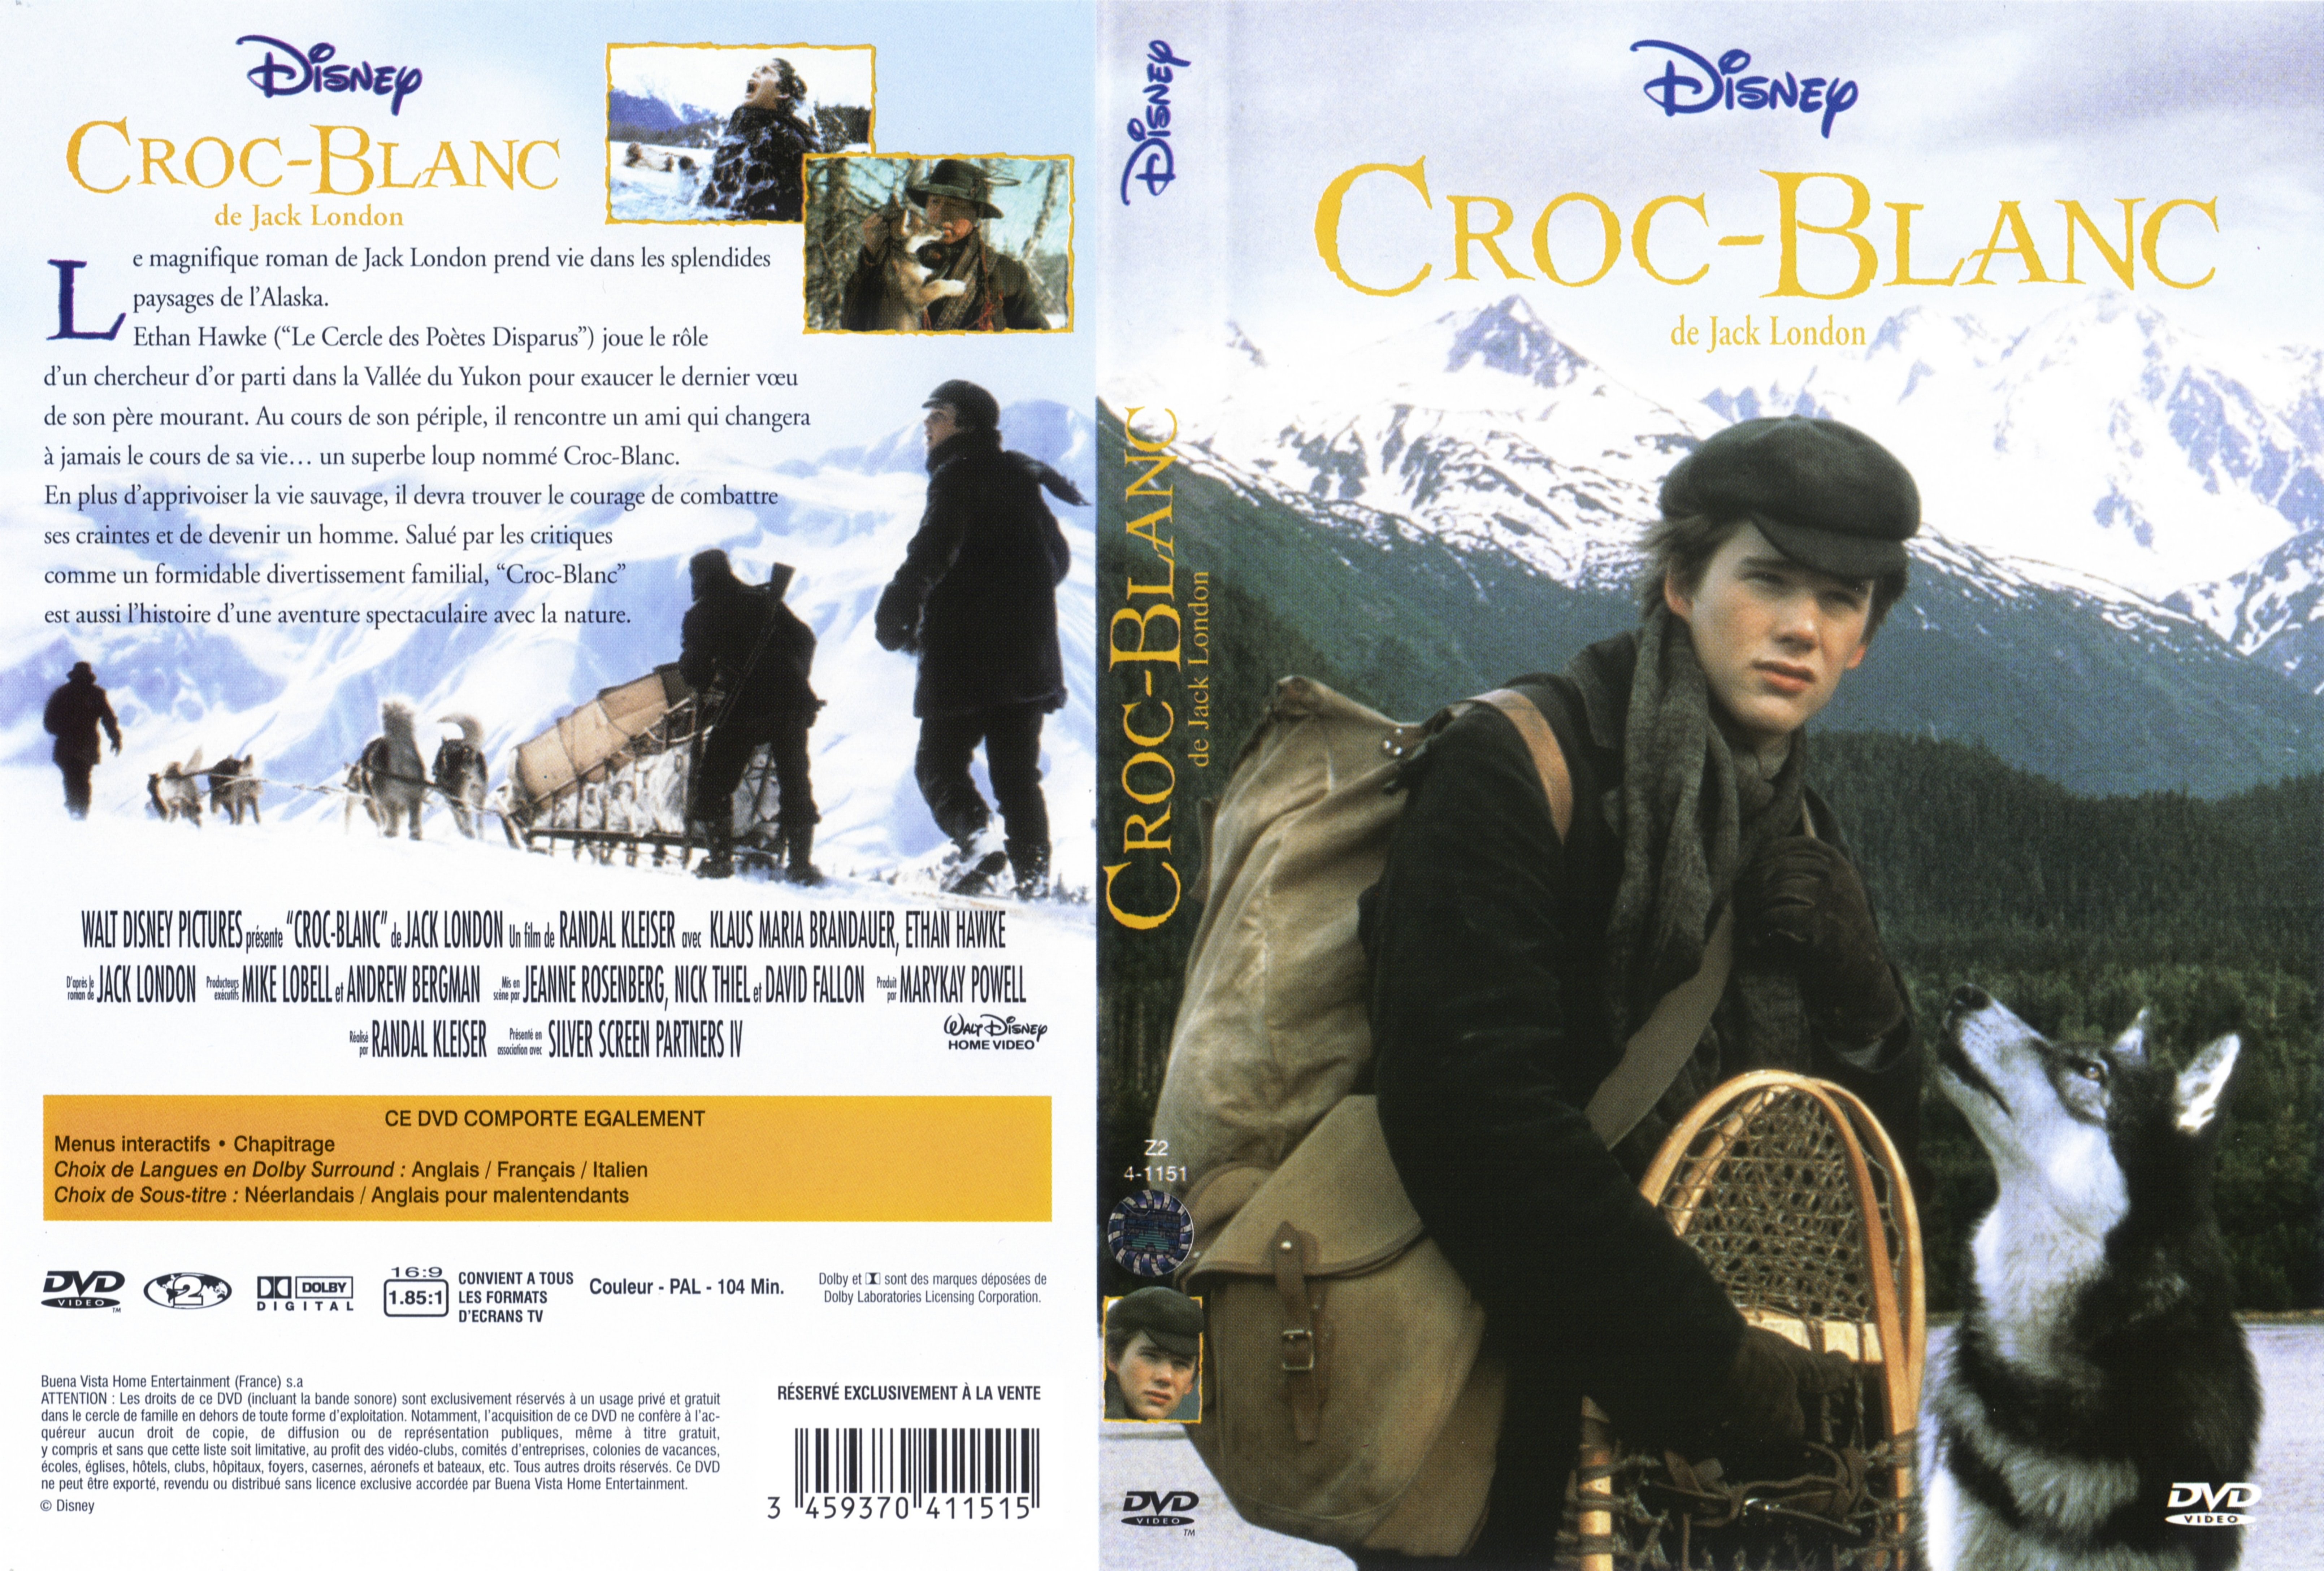 Jaquette DVD Croc-blanc